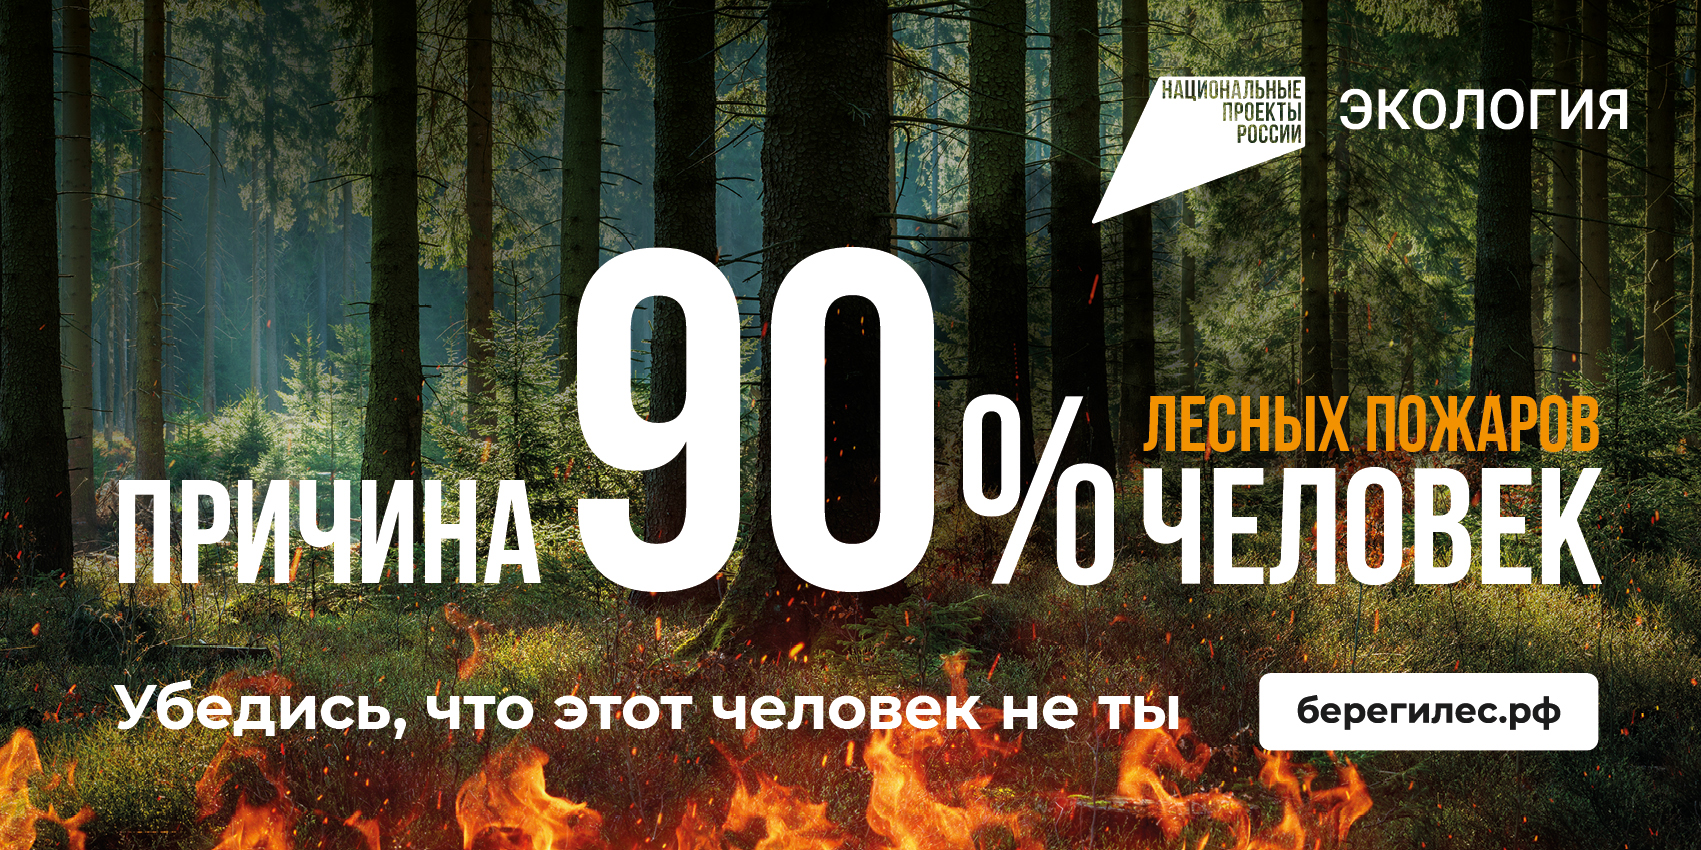 В 90 процентах причиной пожаров в лесу являются люди.